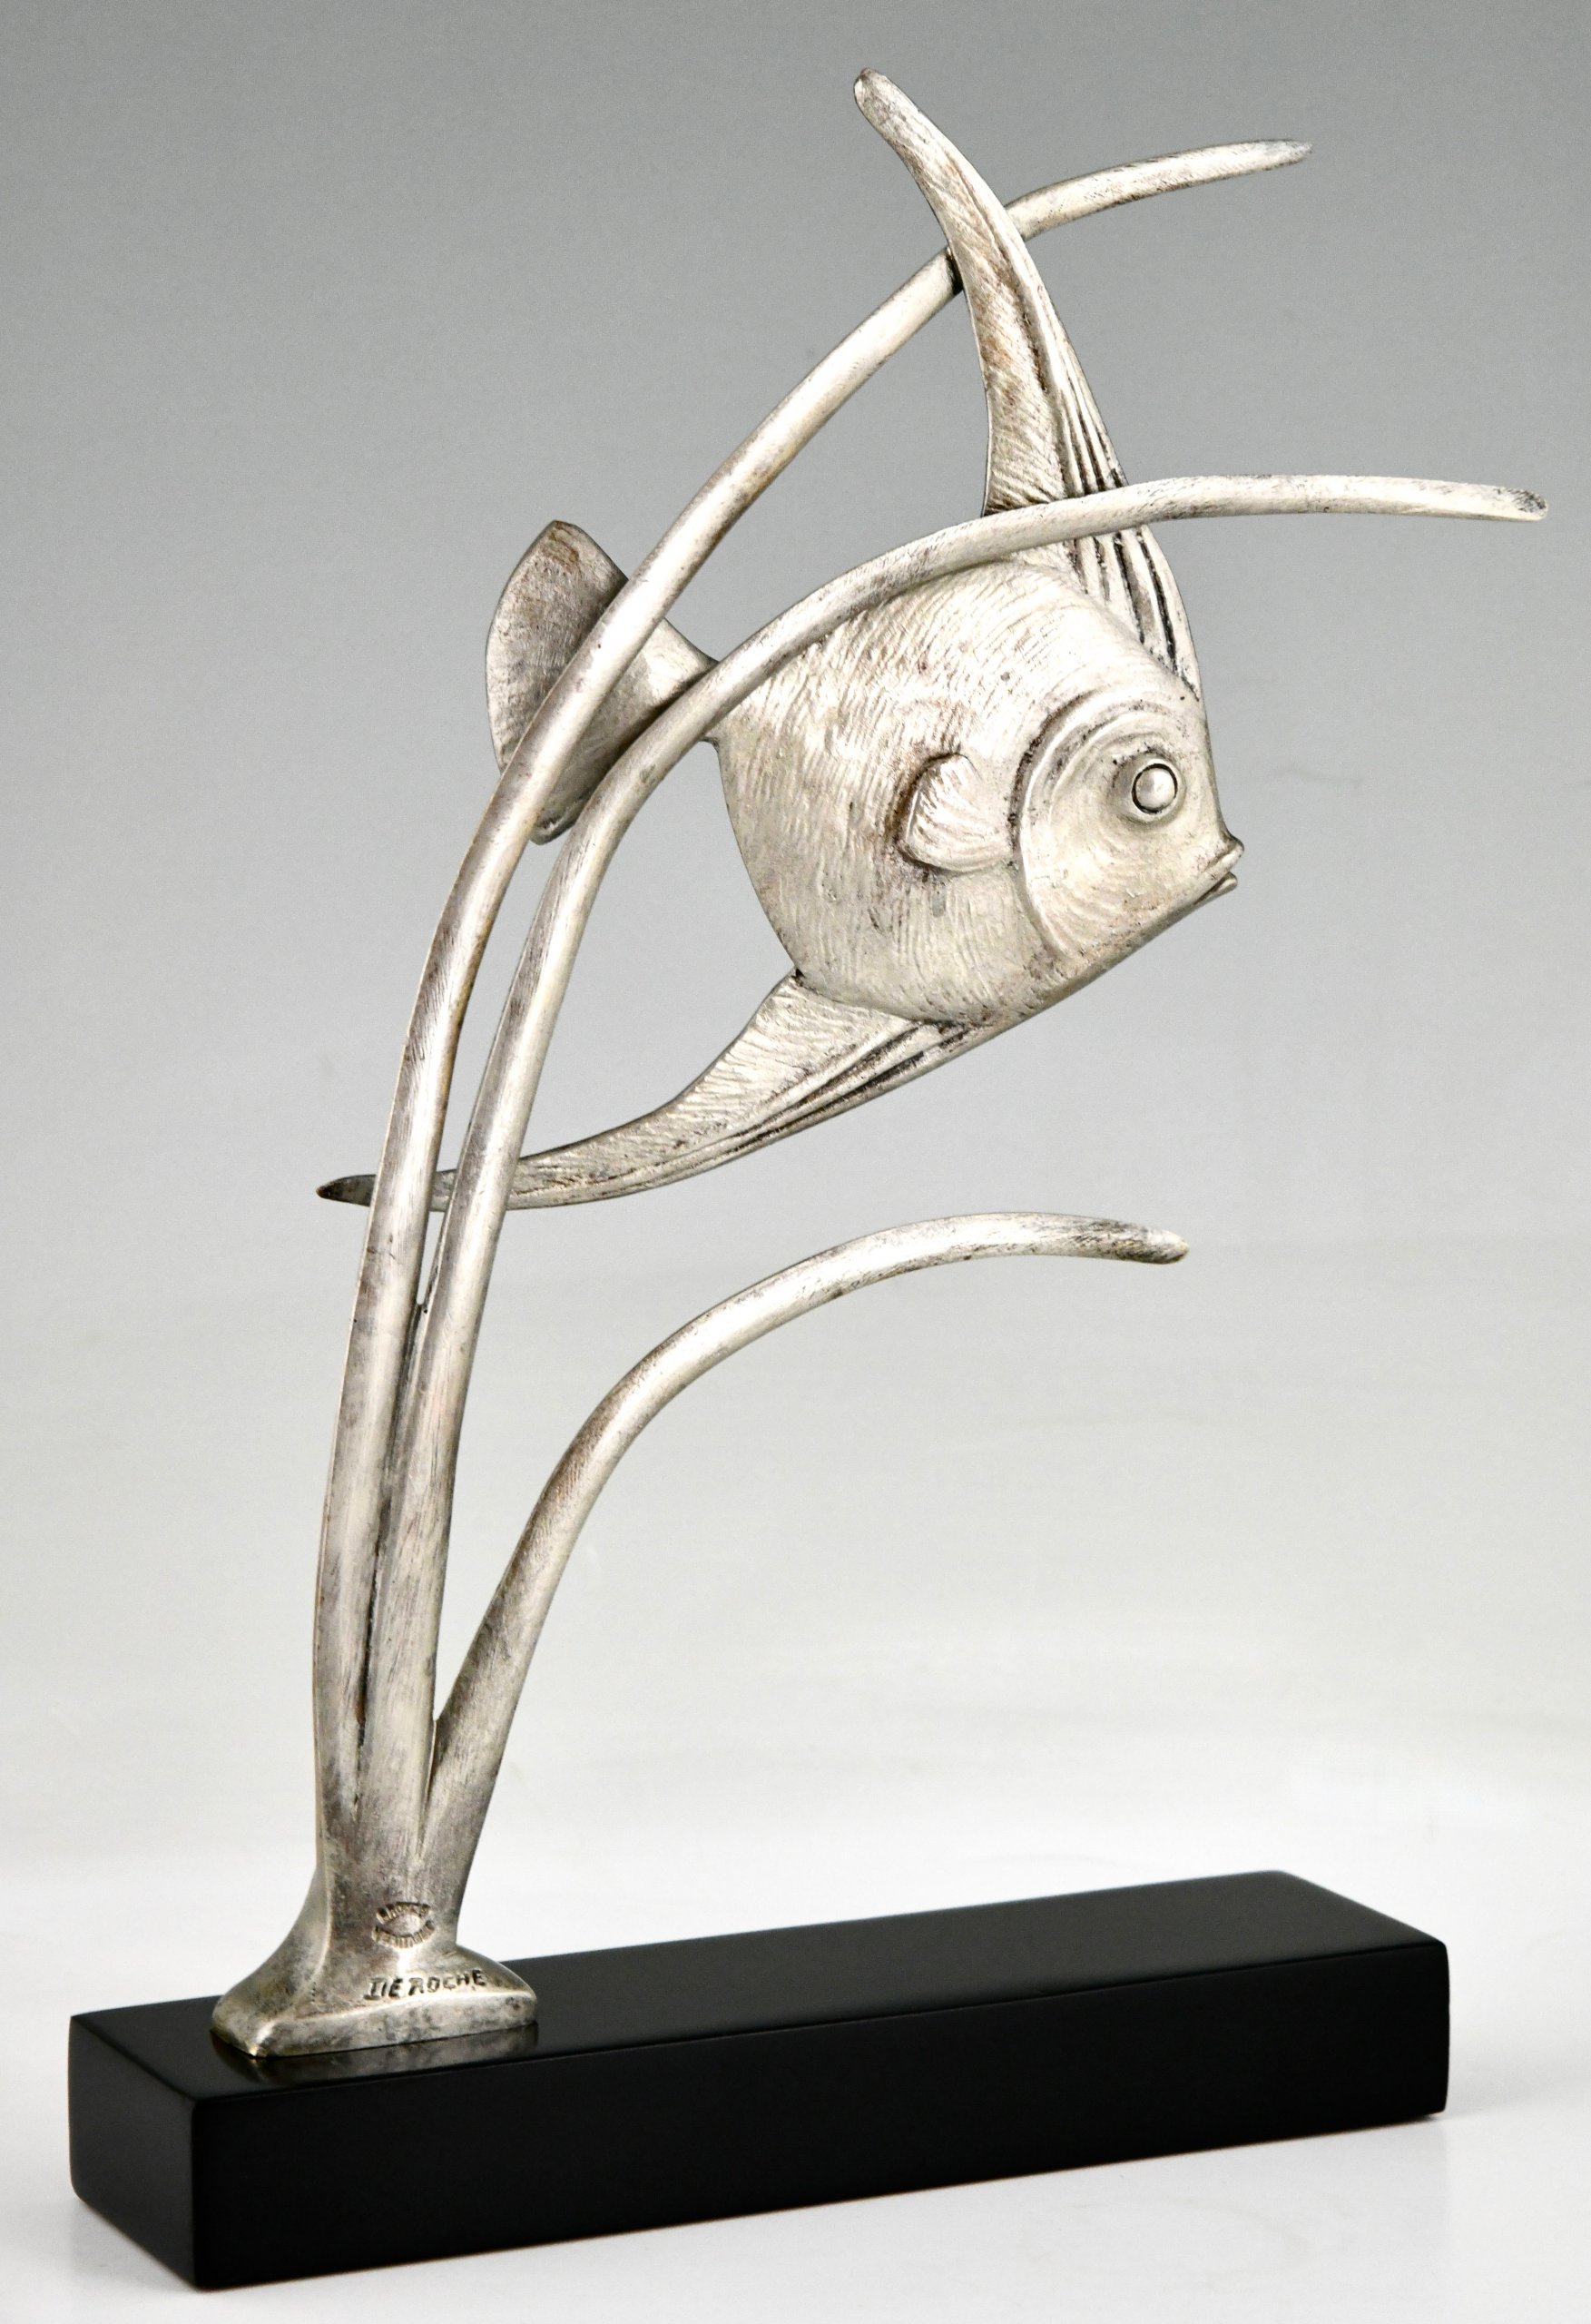 Art Deco bronze sculpture of a fish.